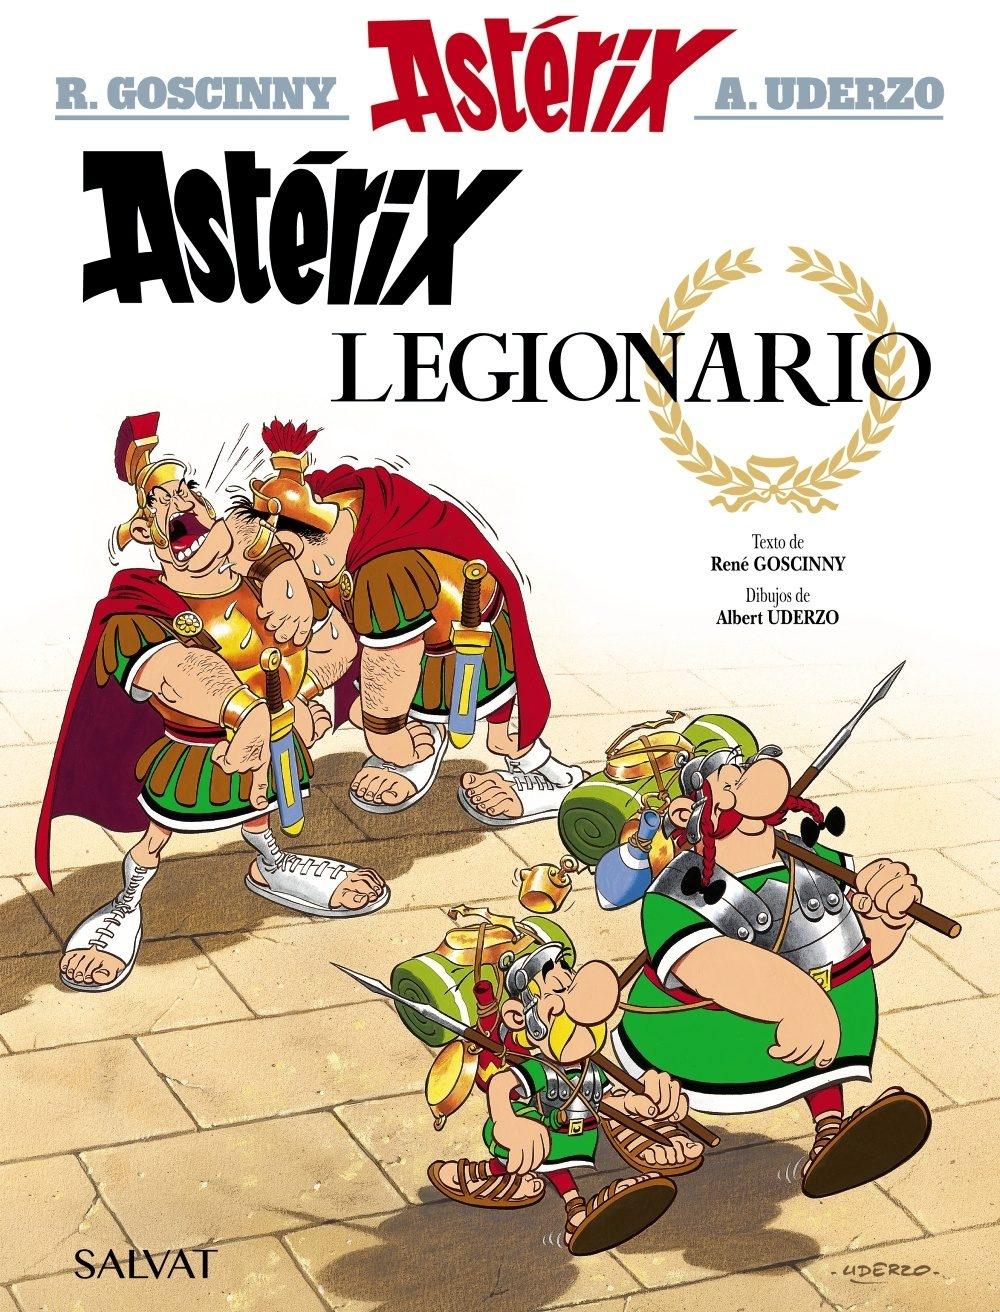 Astérix Legionario "Astérix 10"